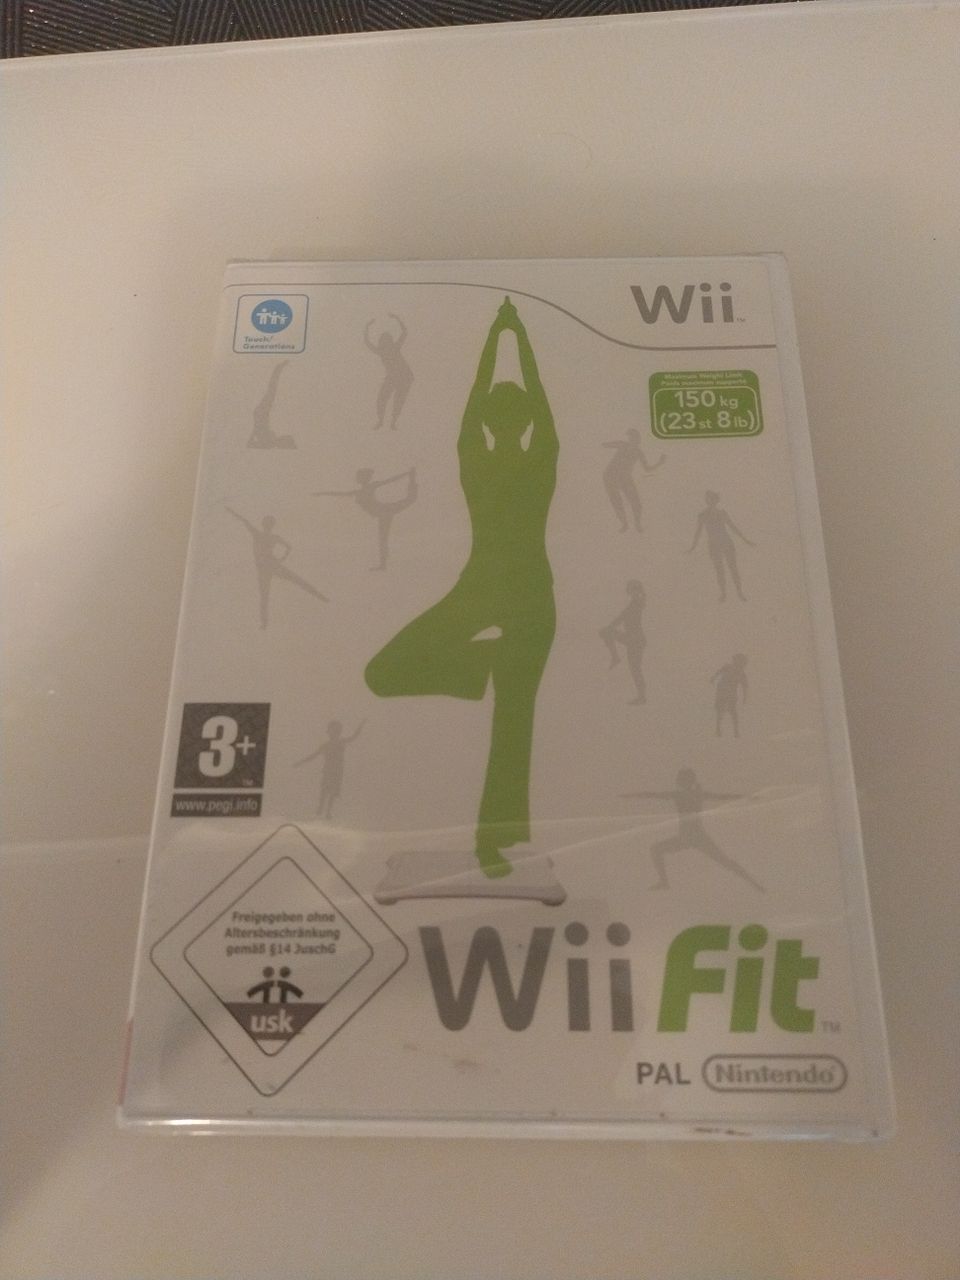 Uusi Wii fit peli